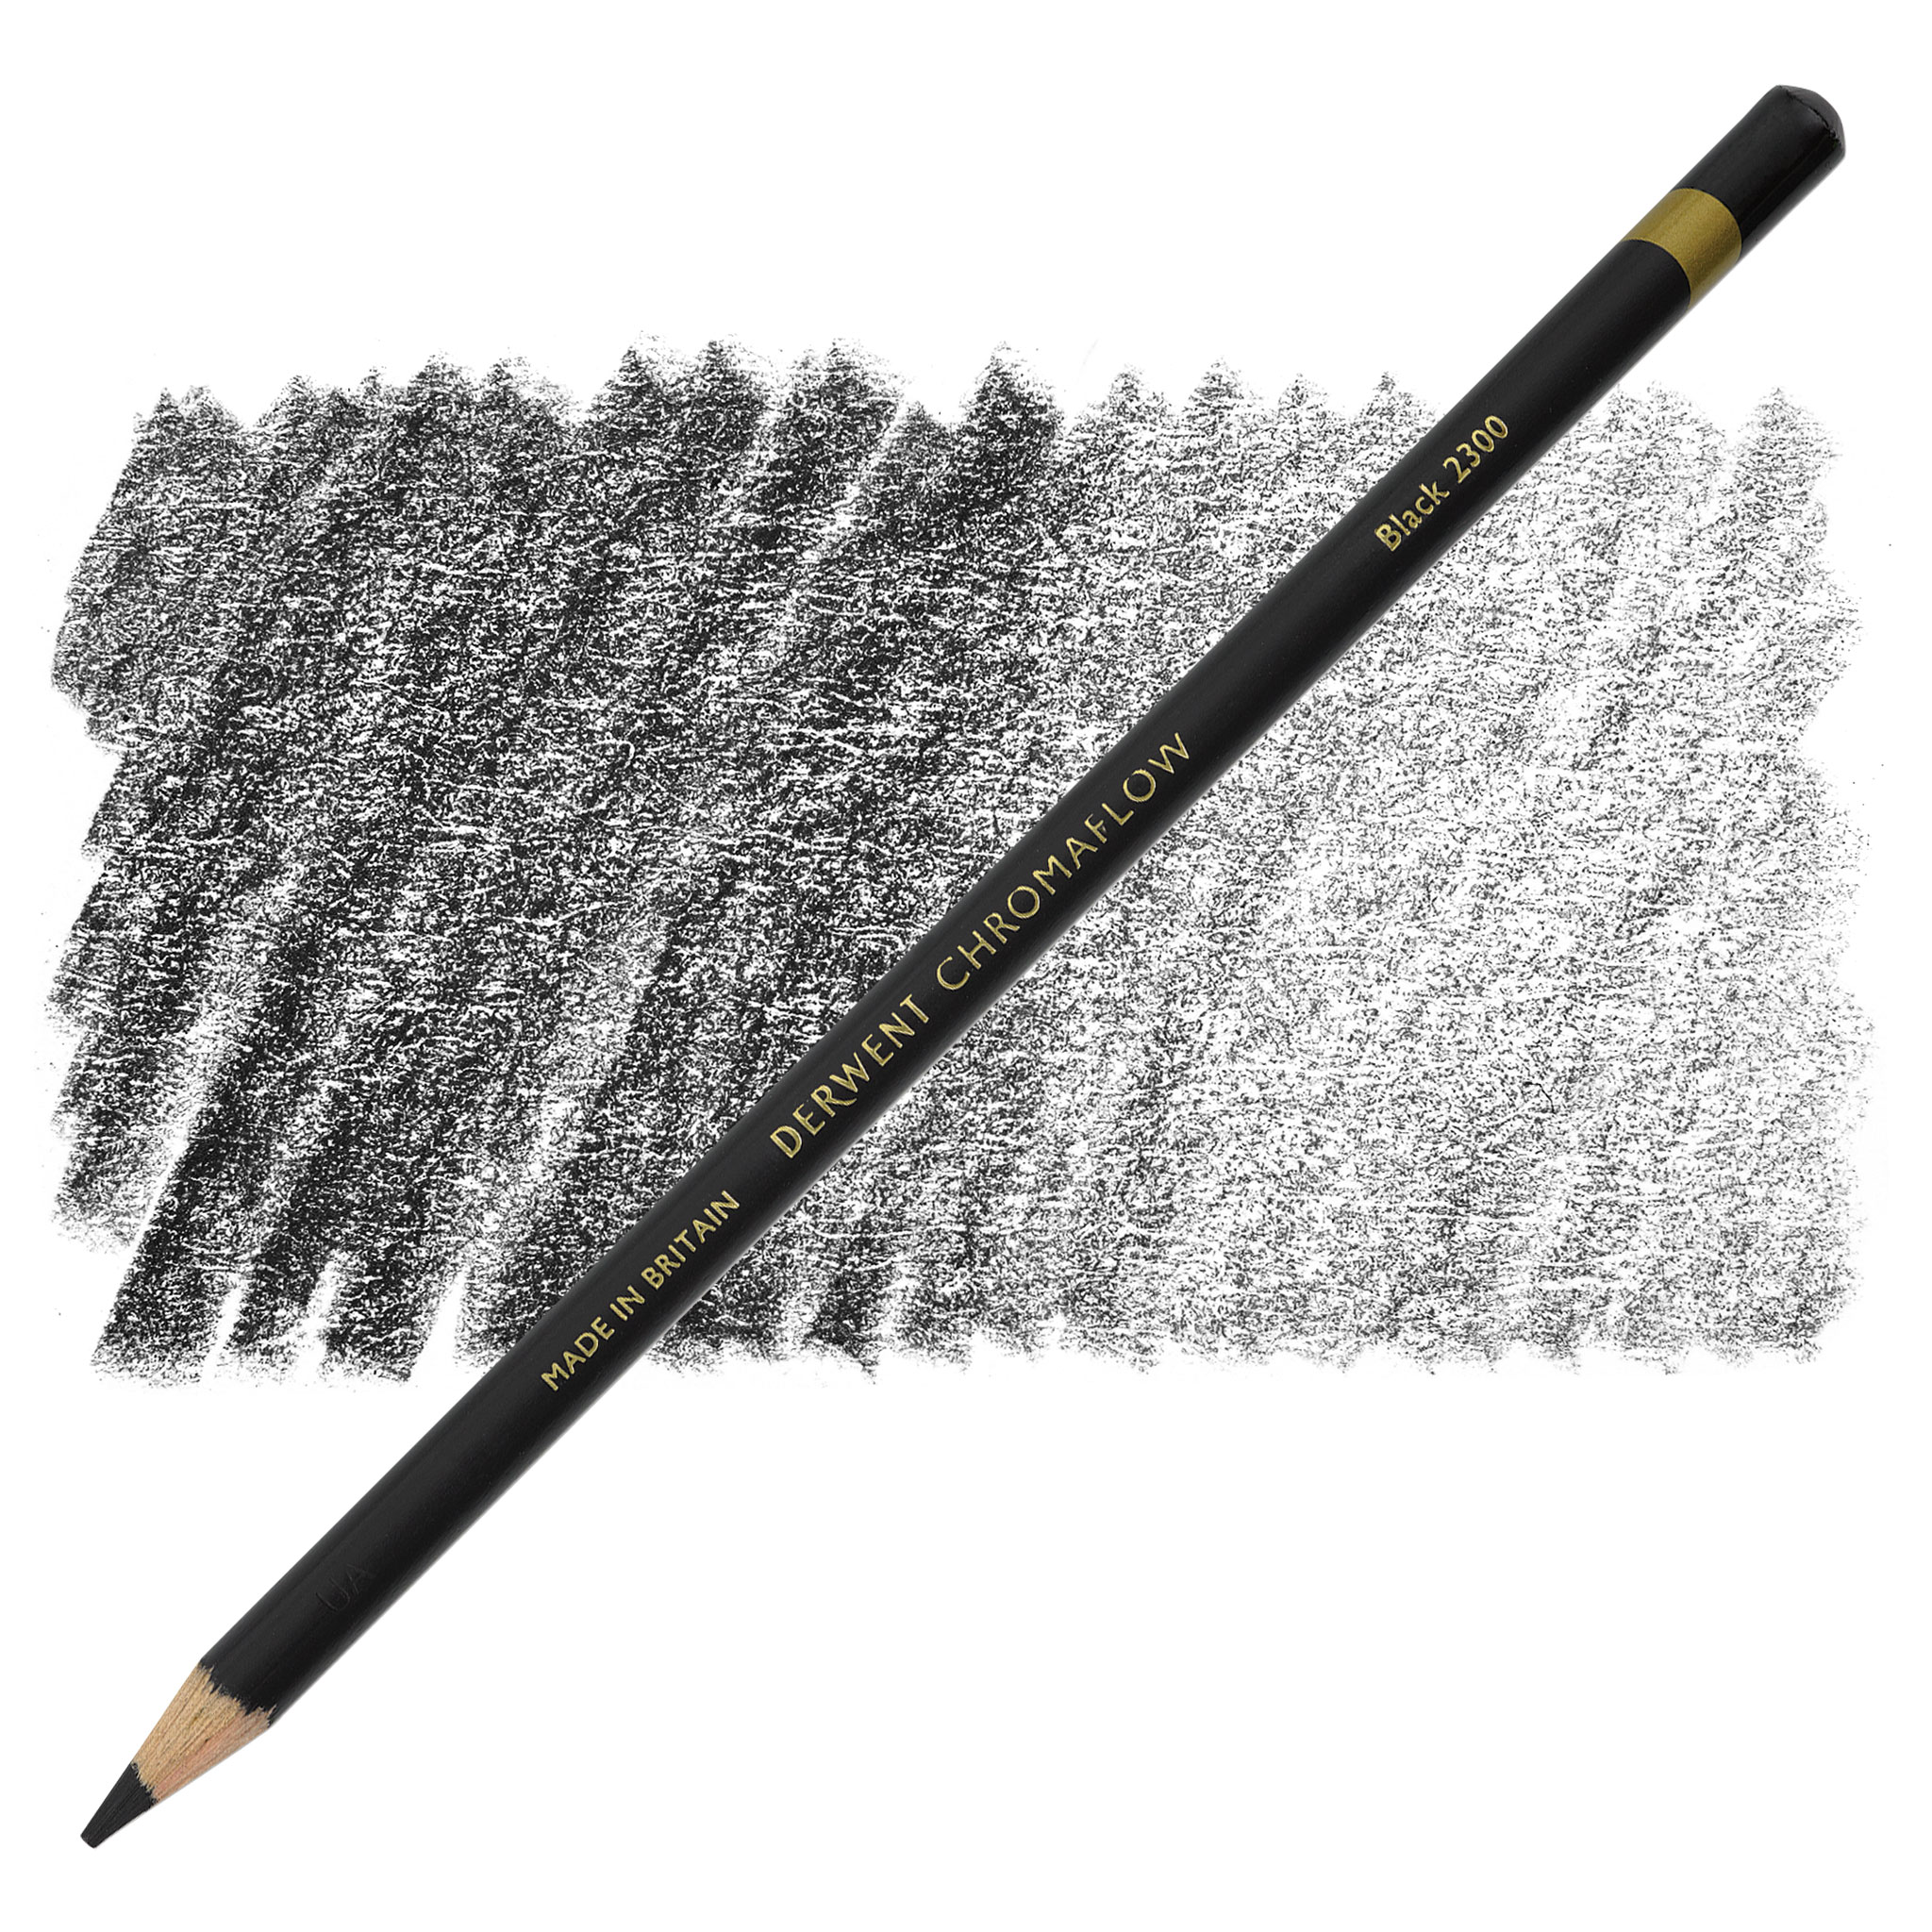 Derwent Chromaflow x72 (Crayons de couleur / Colored Pencils)